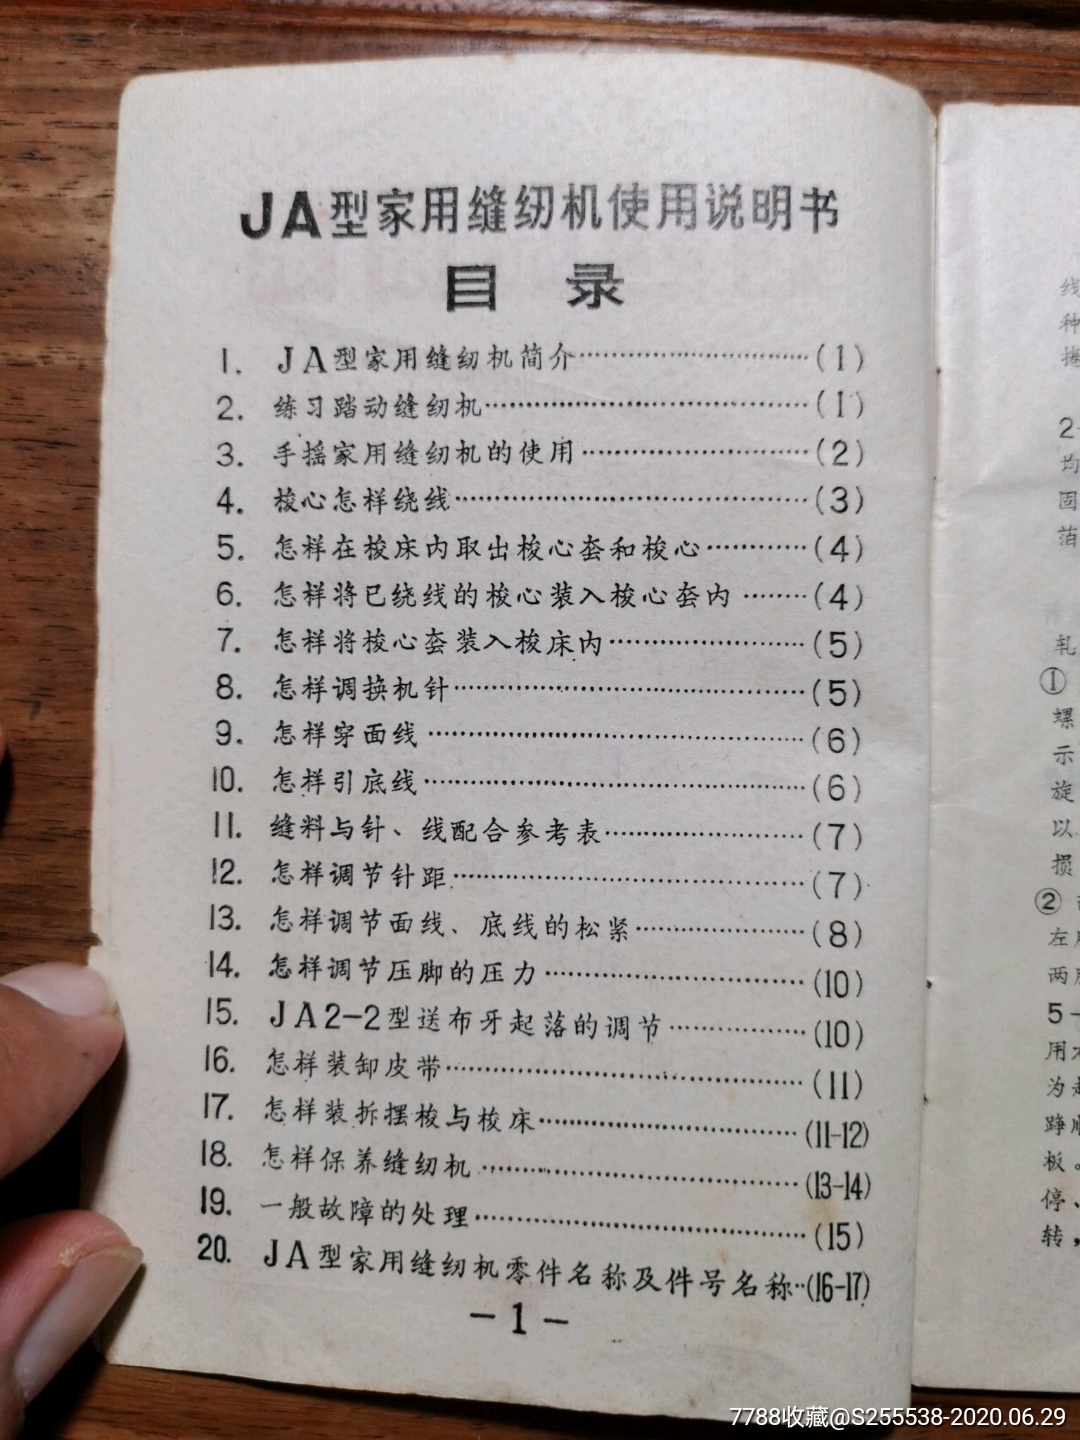 ja型家用缝纫机说明书,广州缝纫机厂